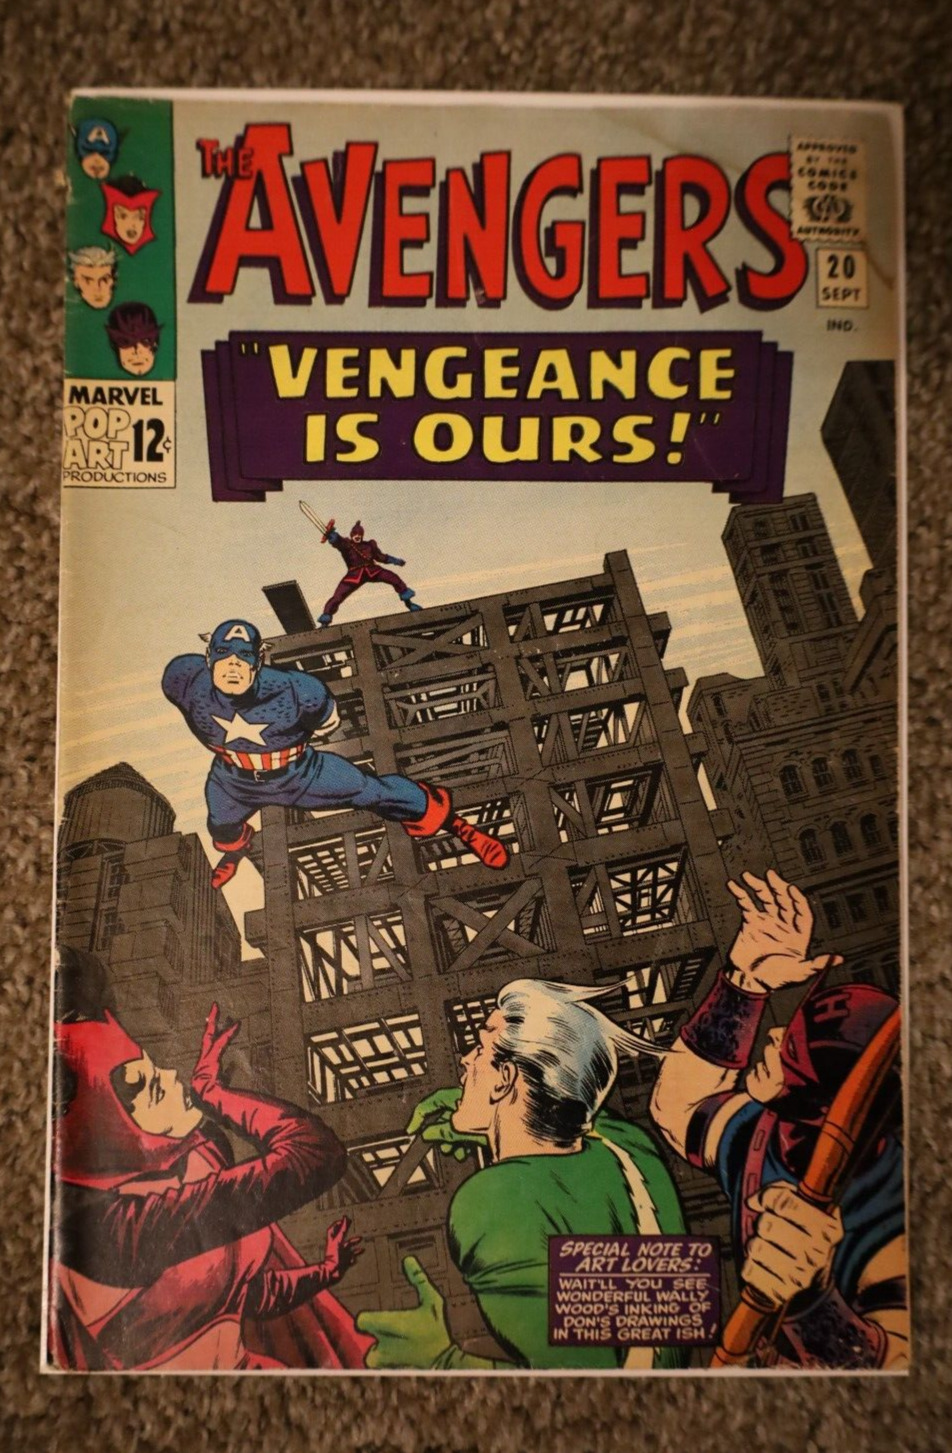 Avengers Issue 20 VG+ Grade 1965 Stan Lee Jack Kirby HUGE AVENGERS RUN